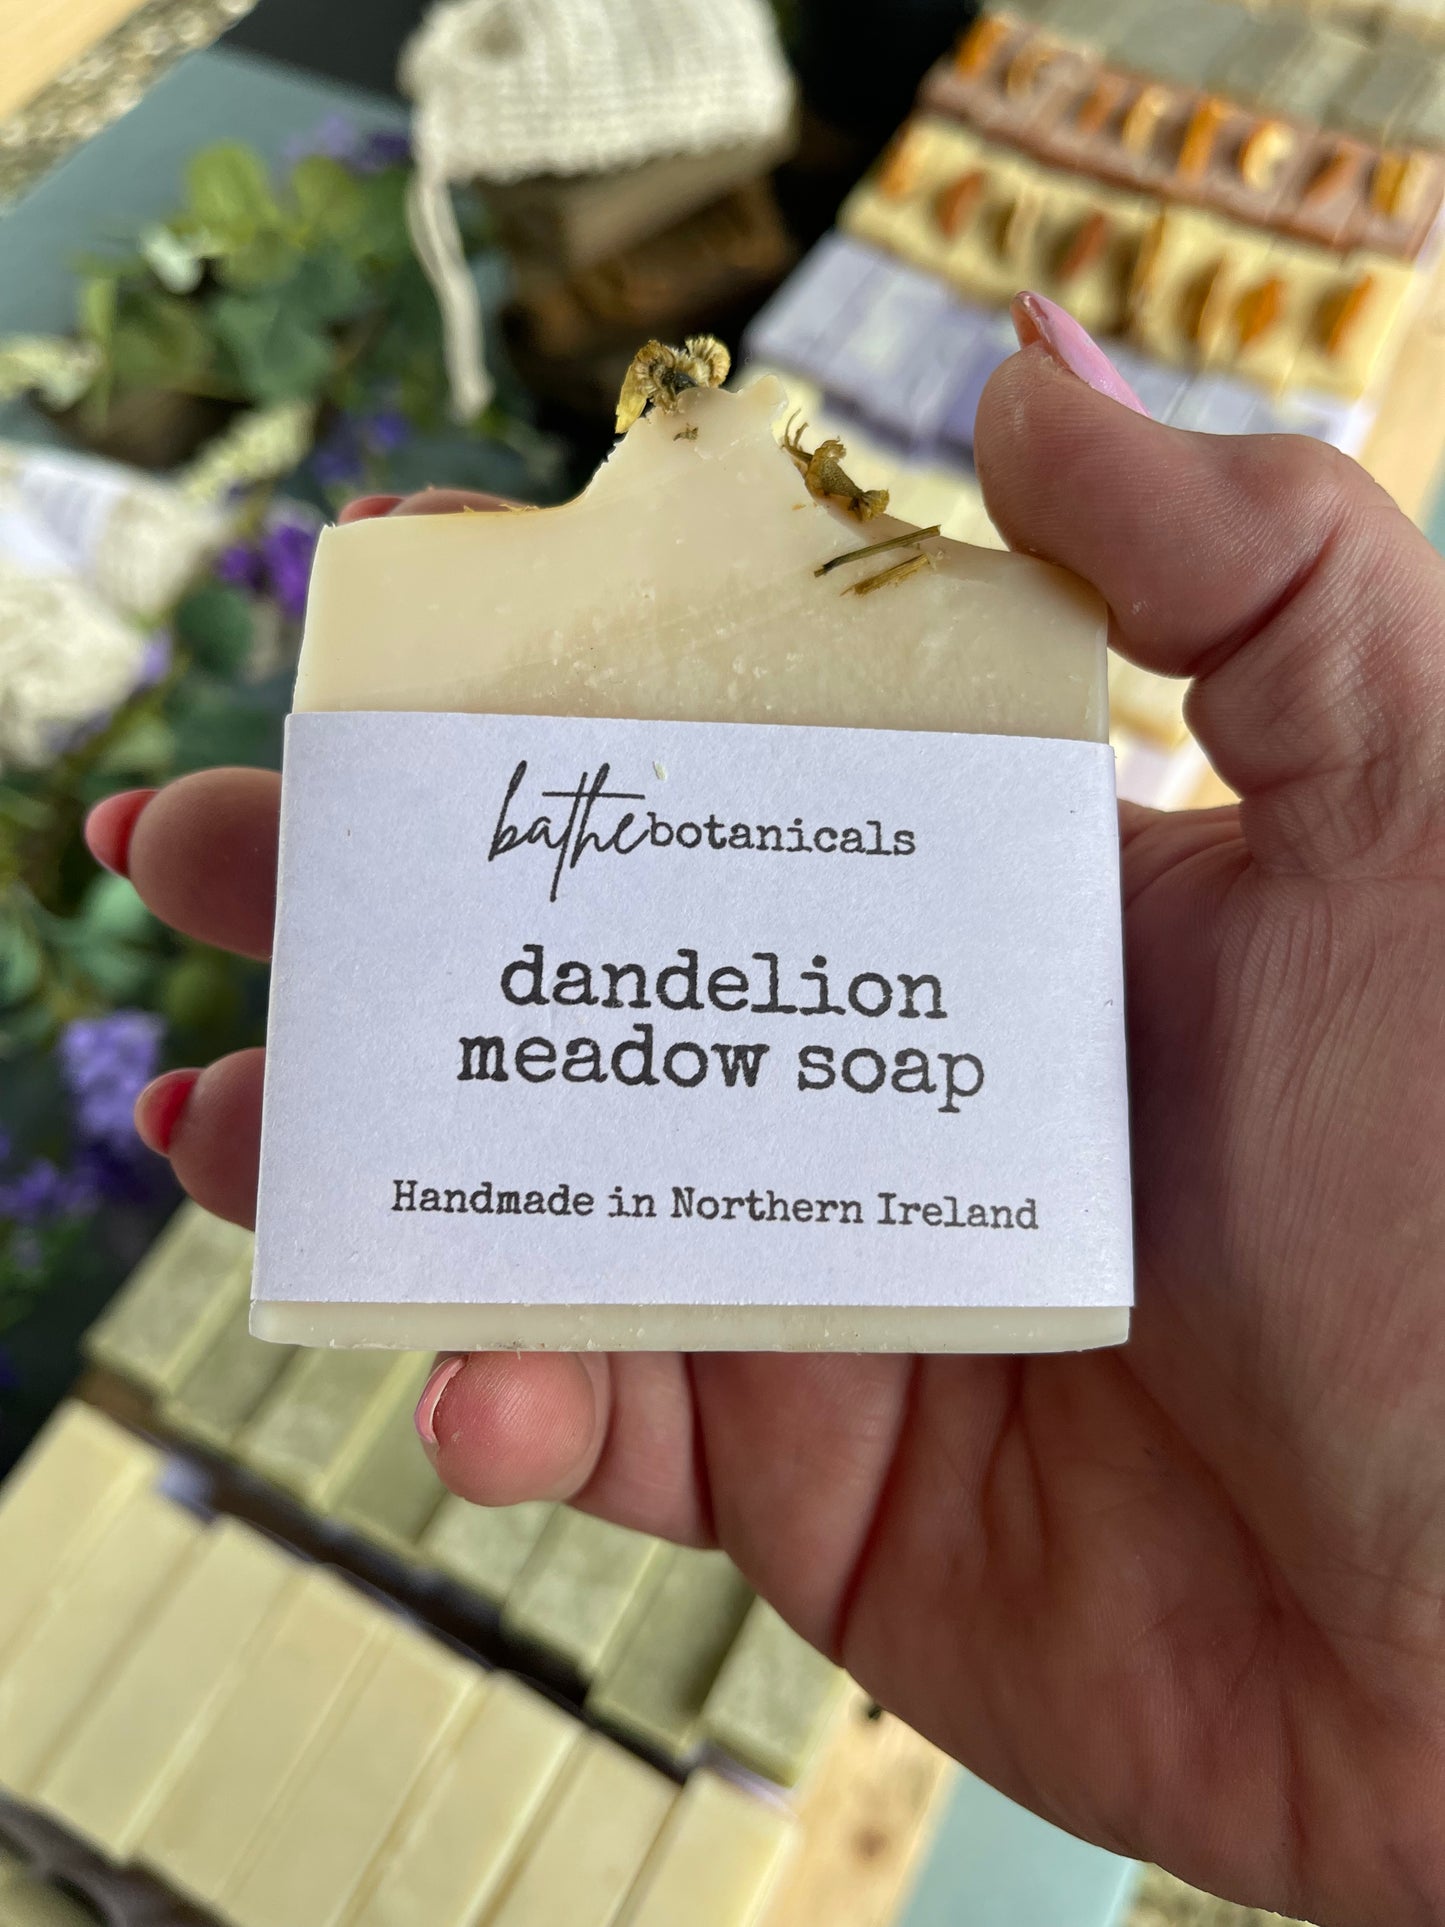 Dandelion meadow soap